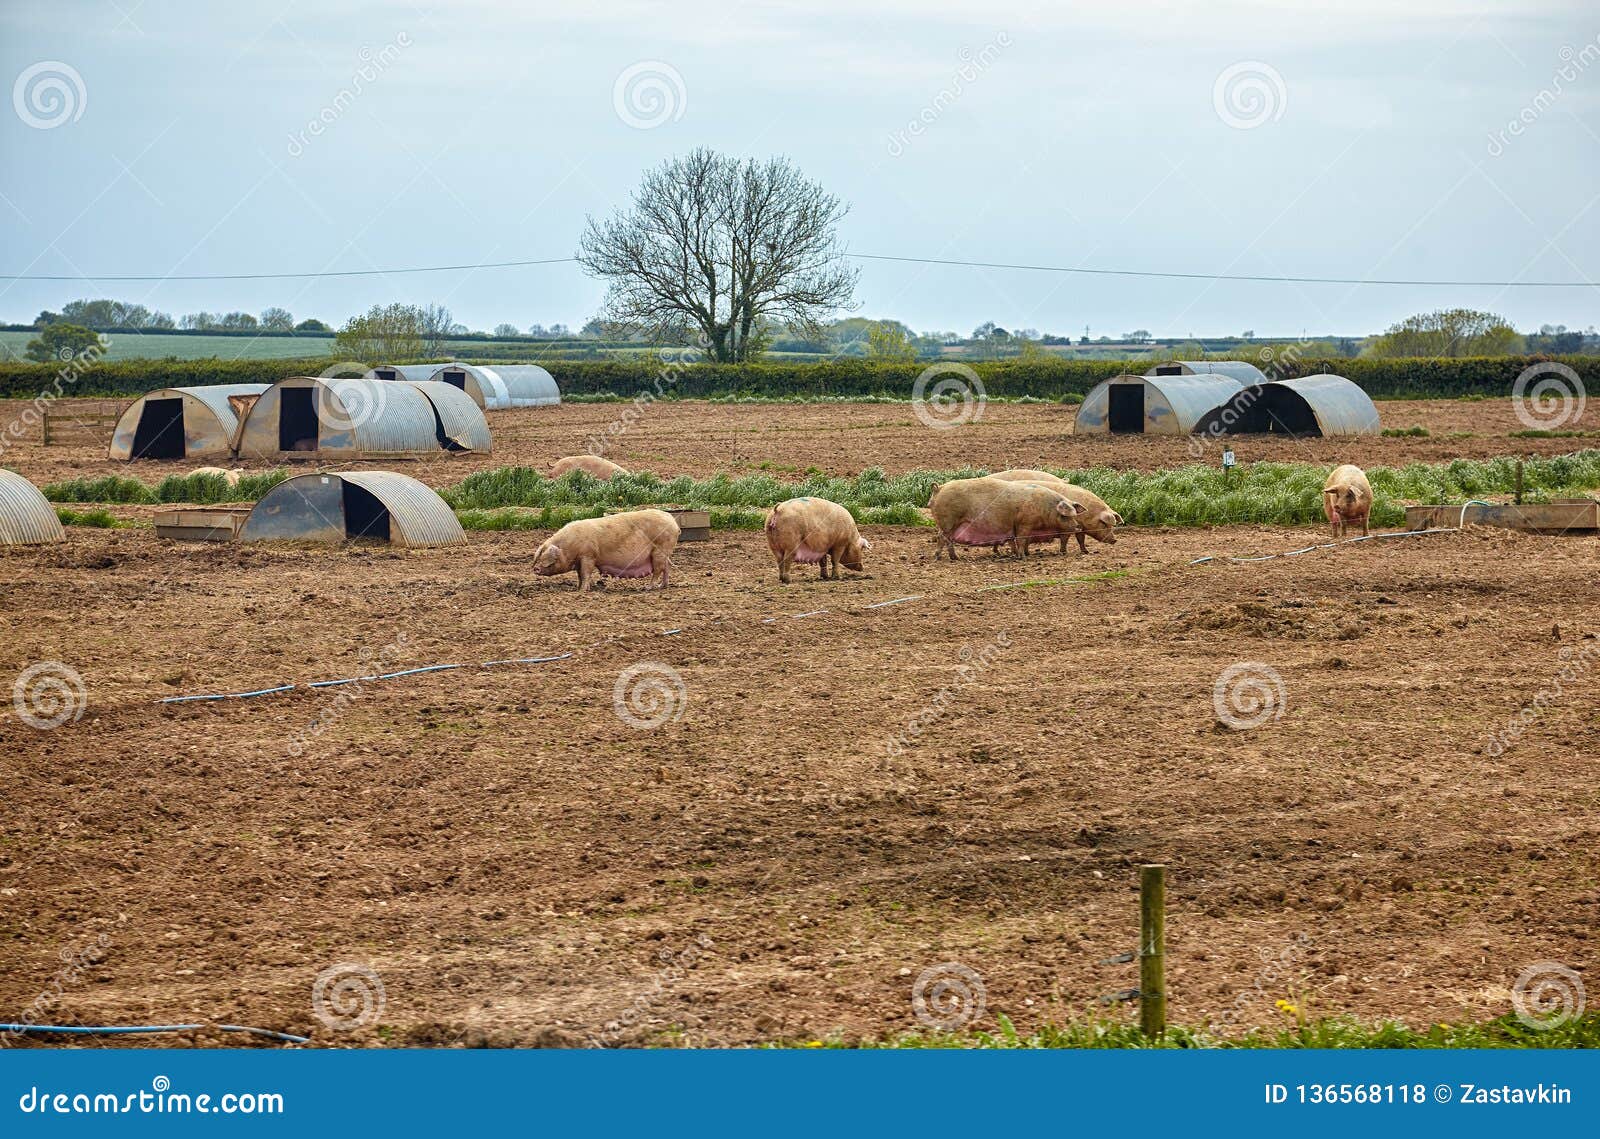 the pig farm in devon. england